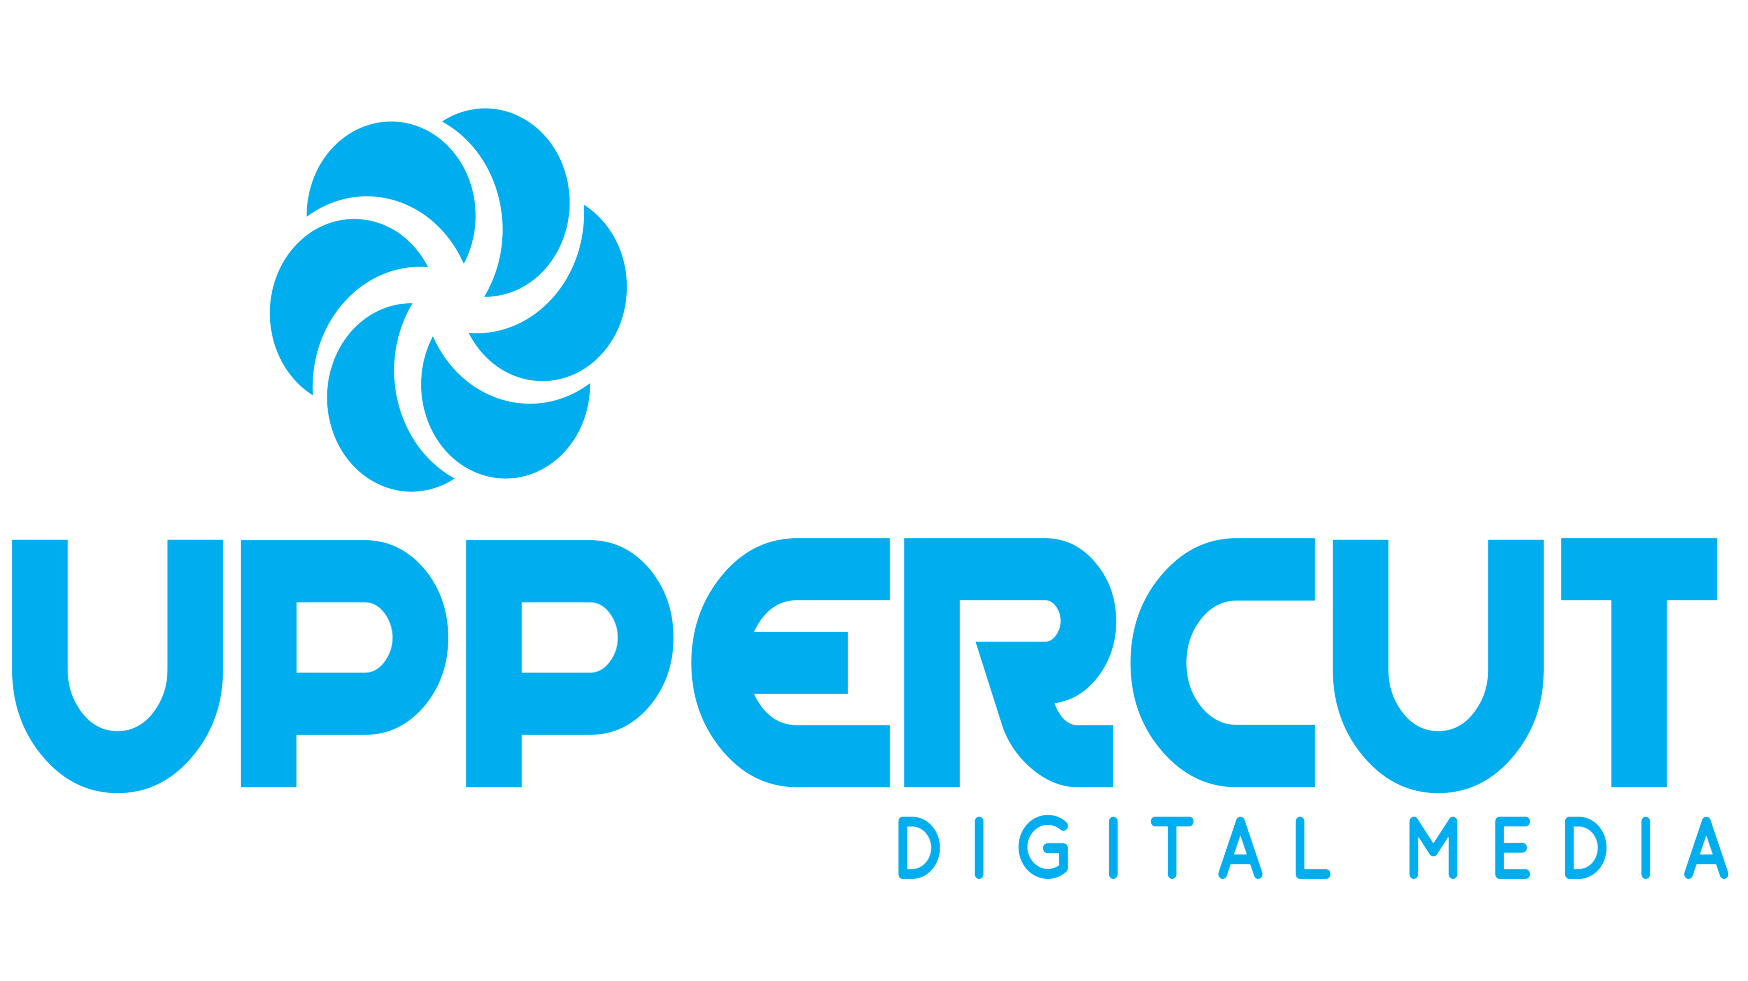 Uppercut Digital Media